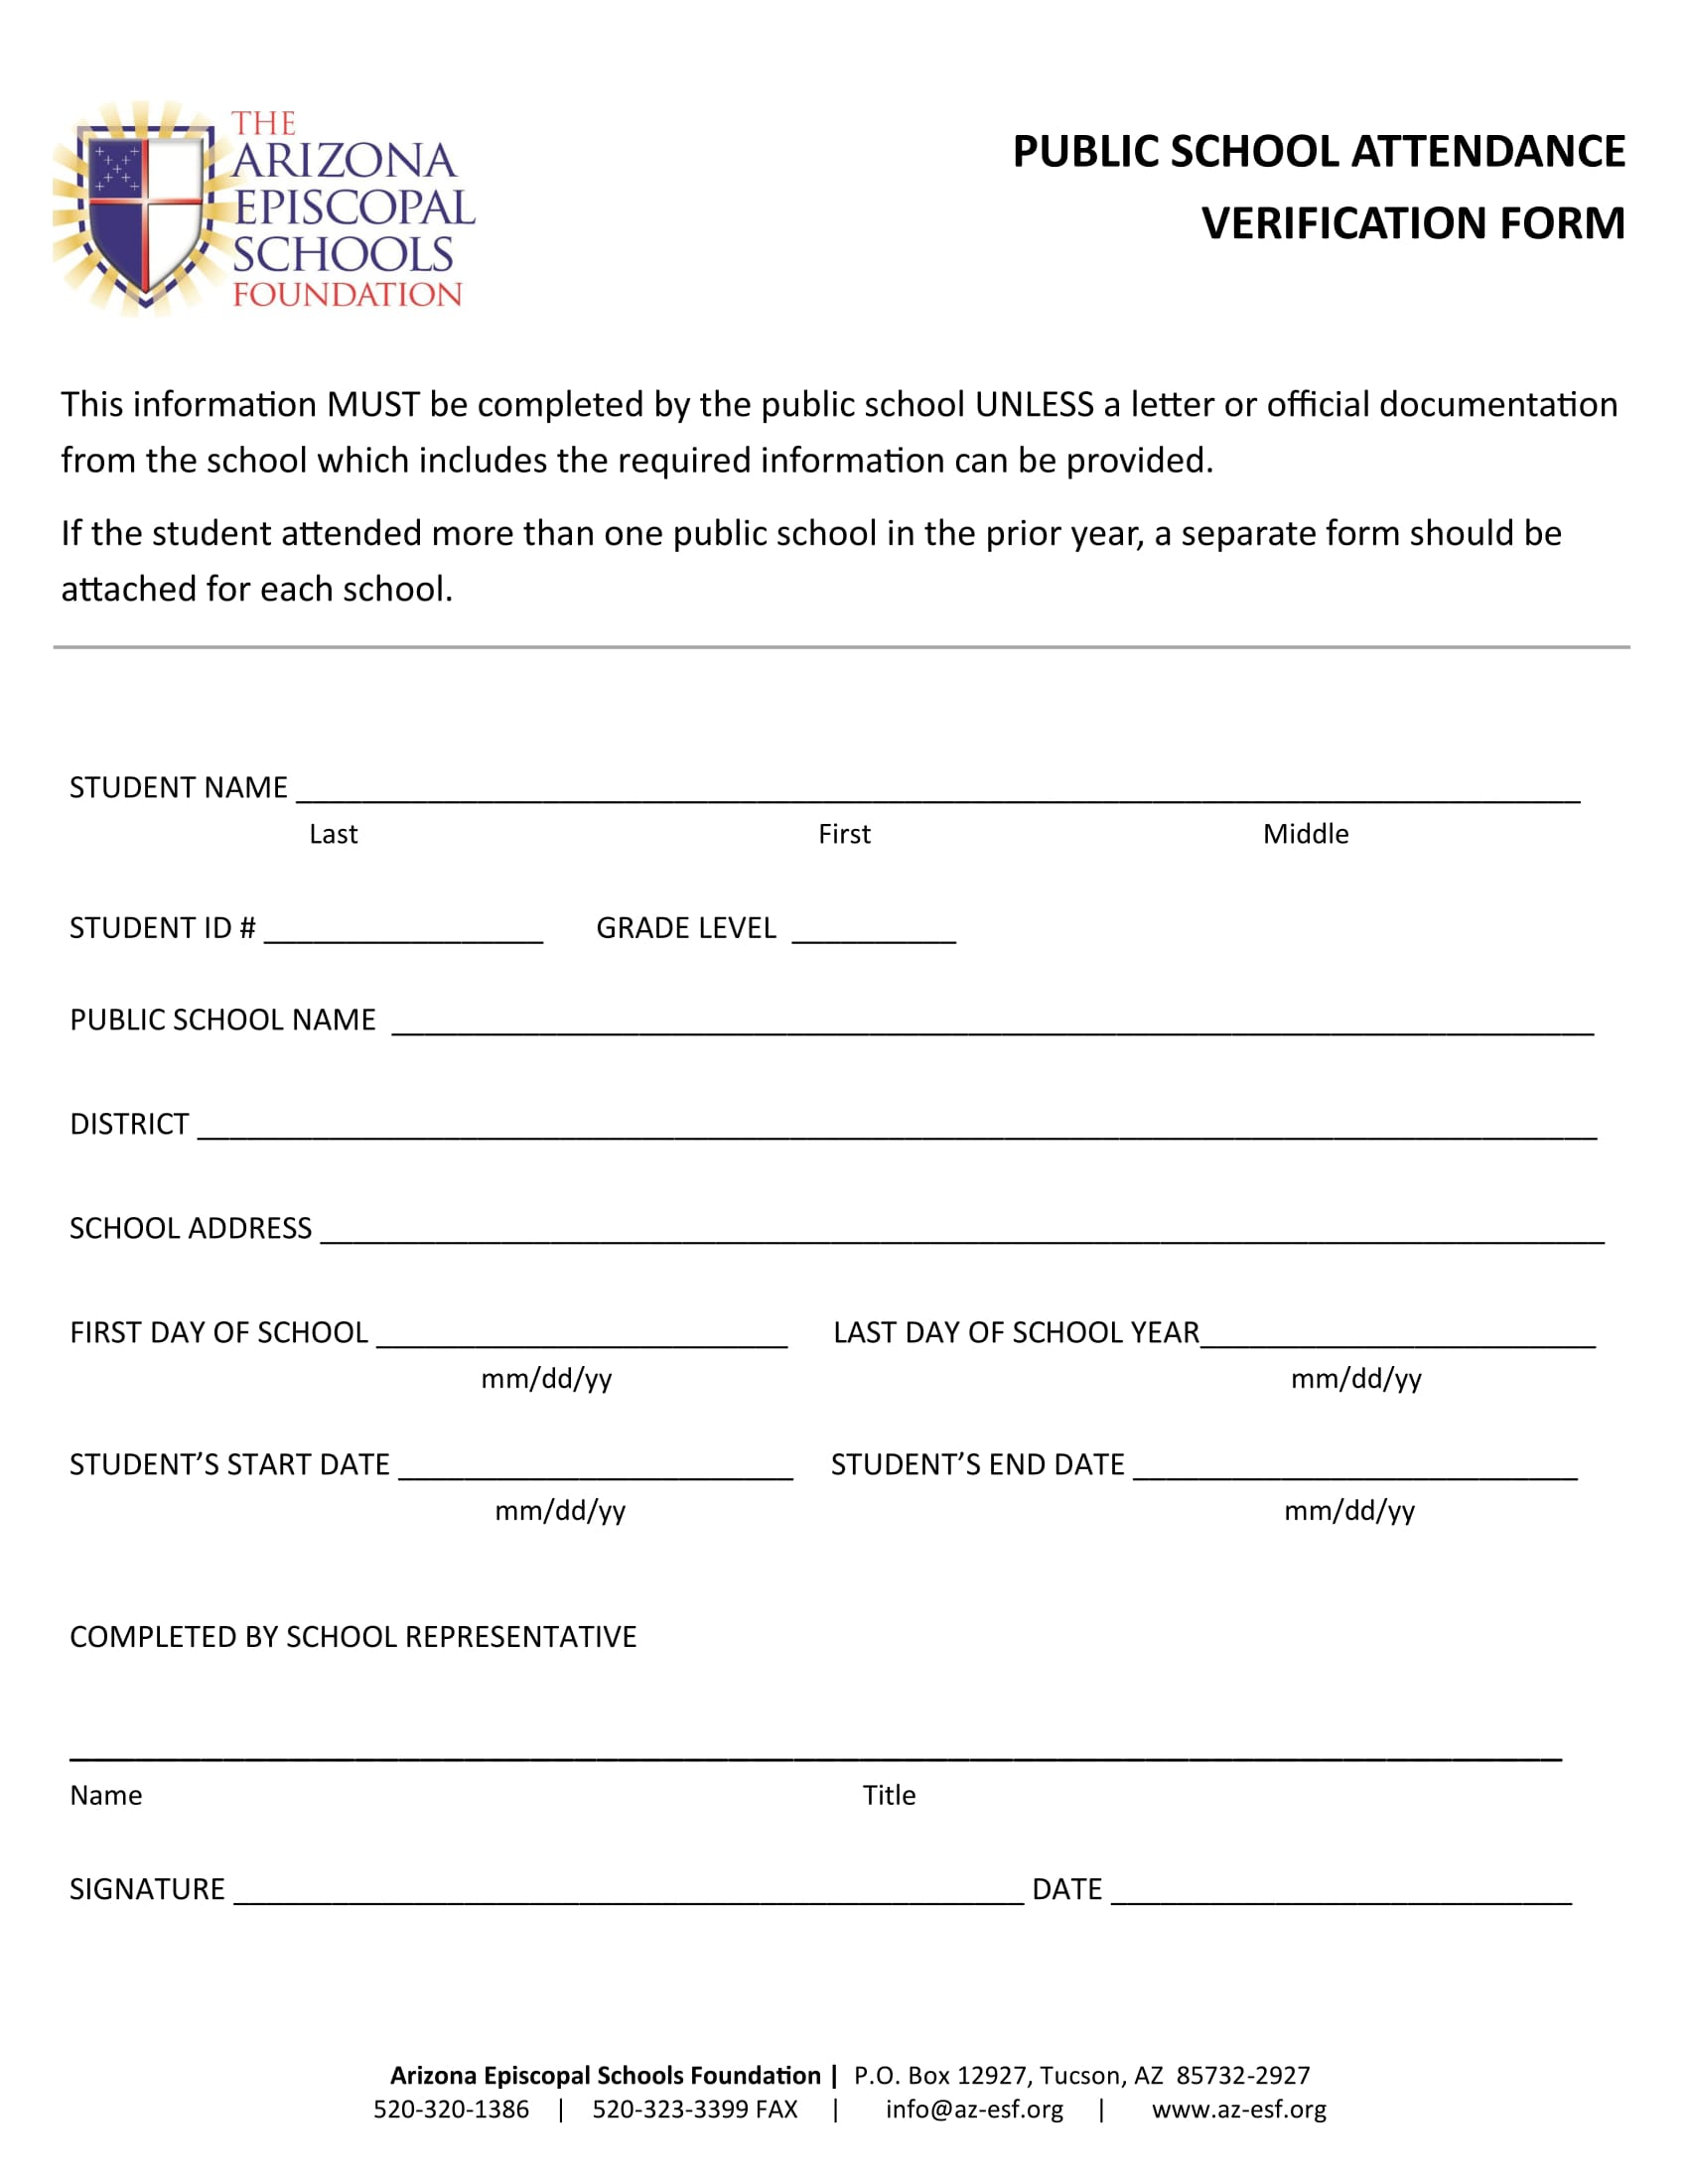 public school attendance verification form 1